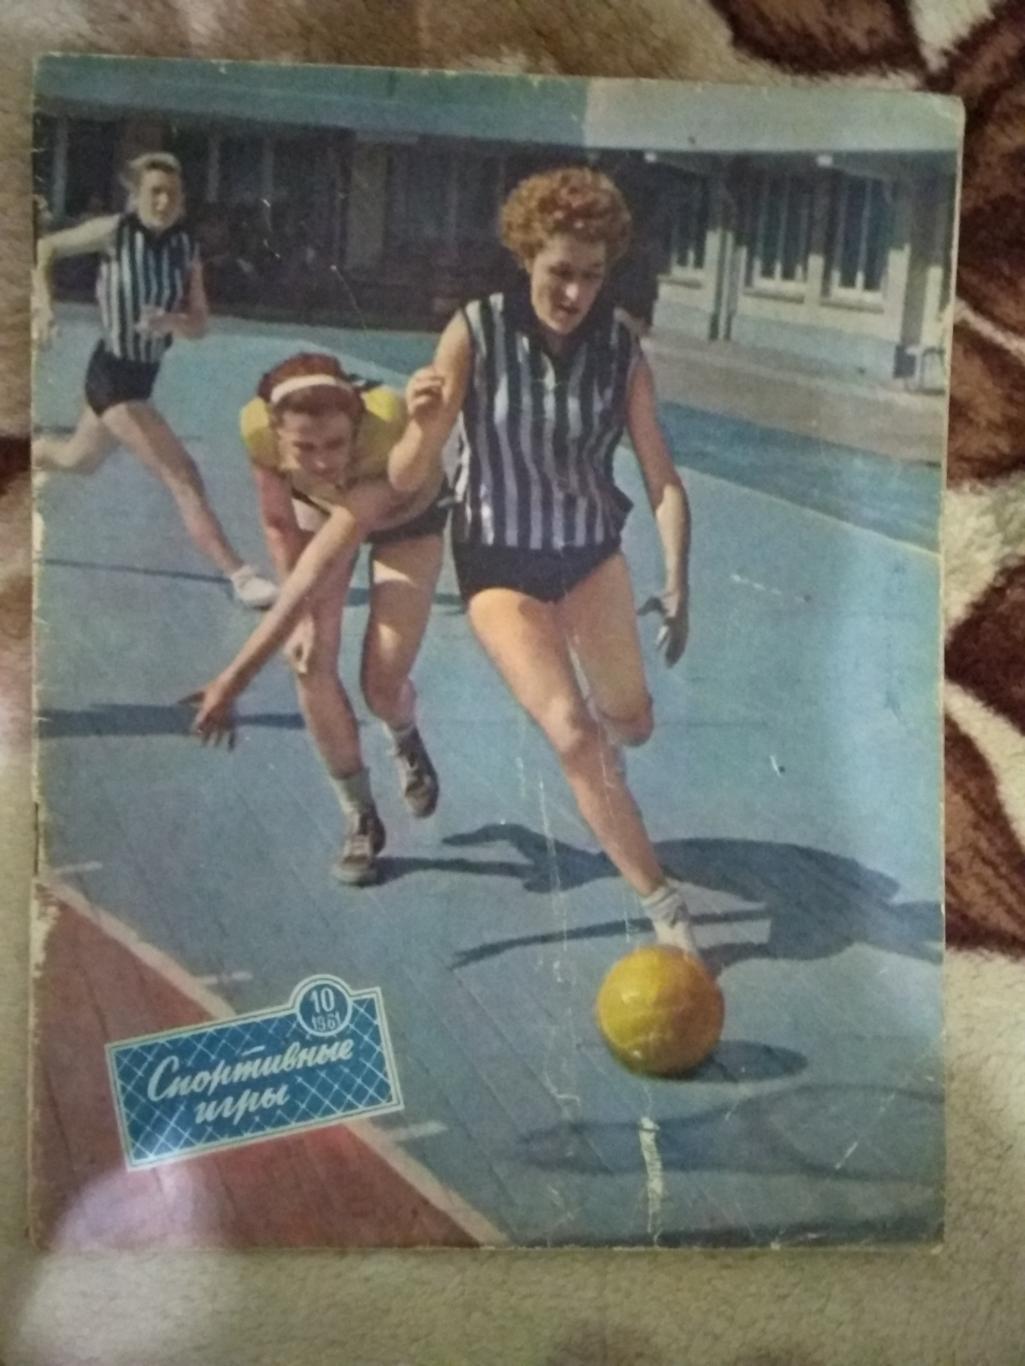 Журнал. Спортивные игры № 10 1961 г.